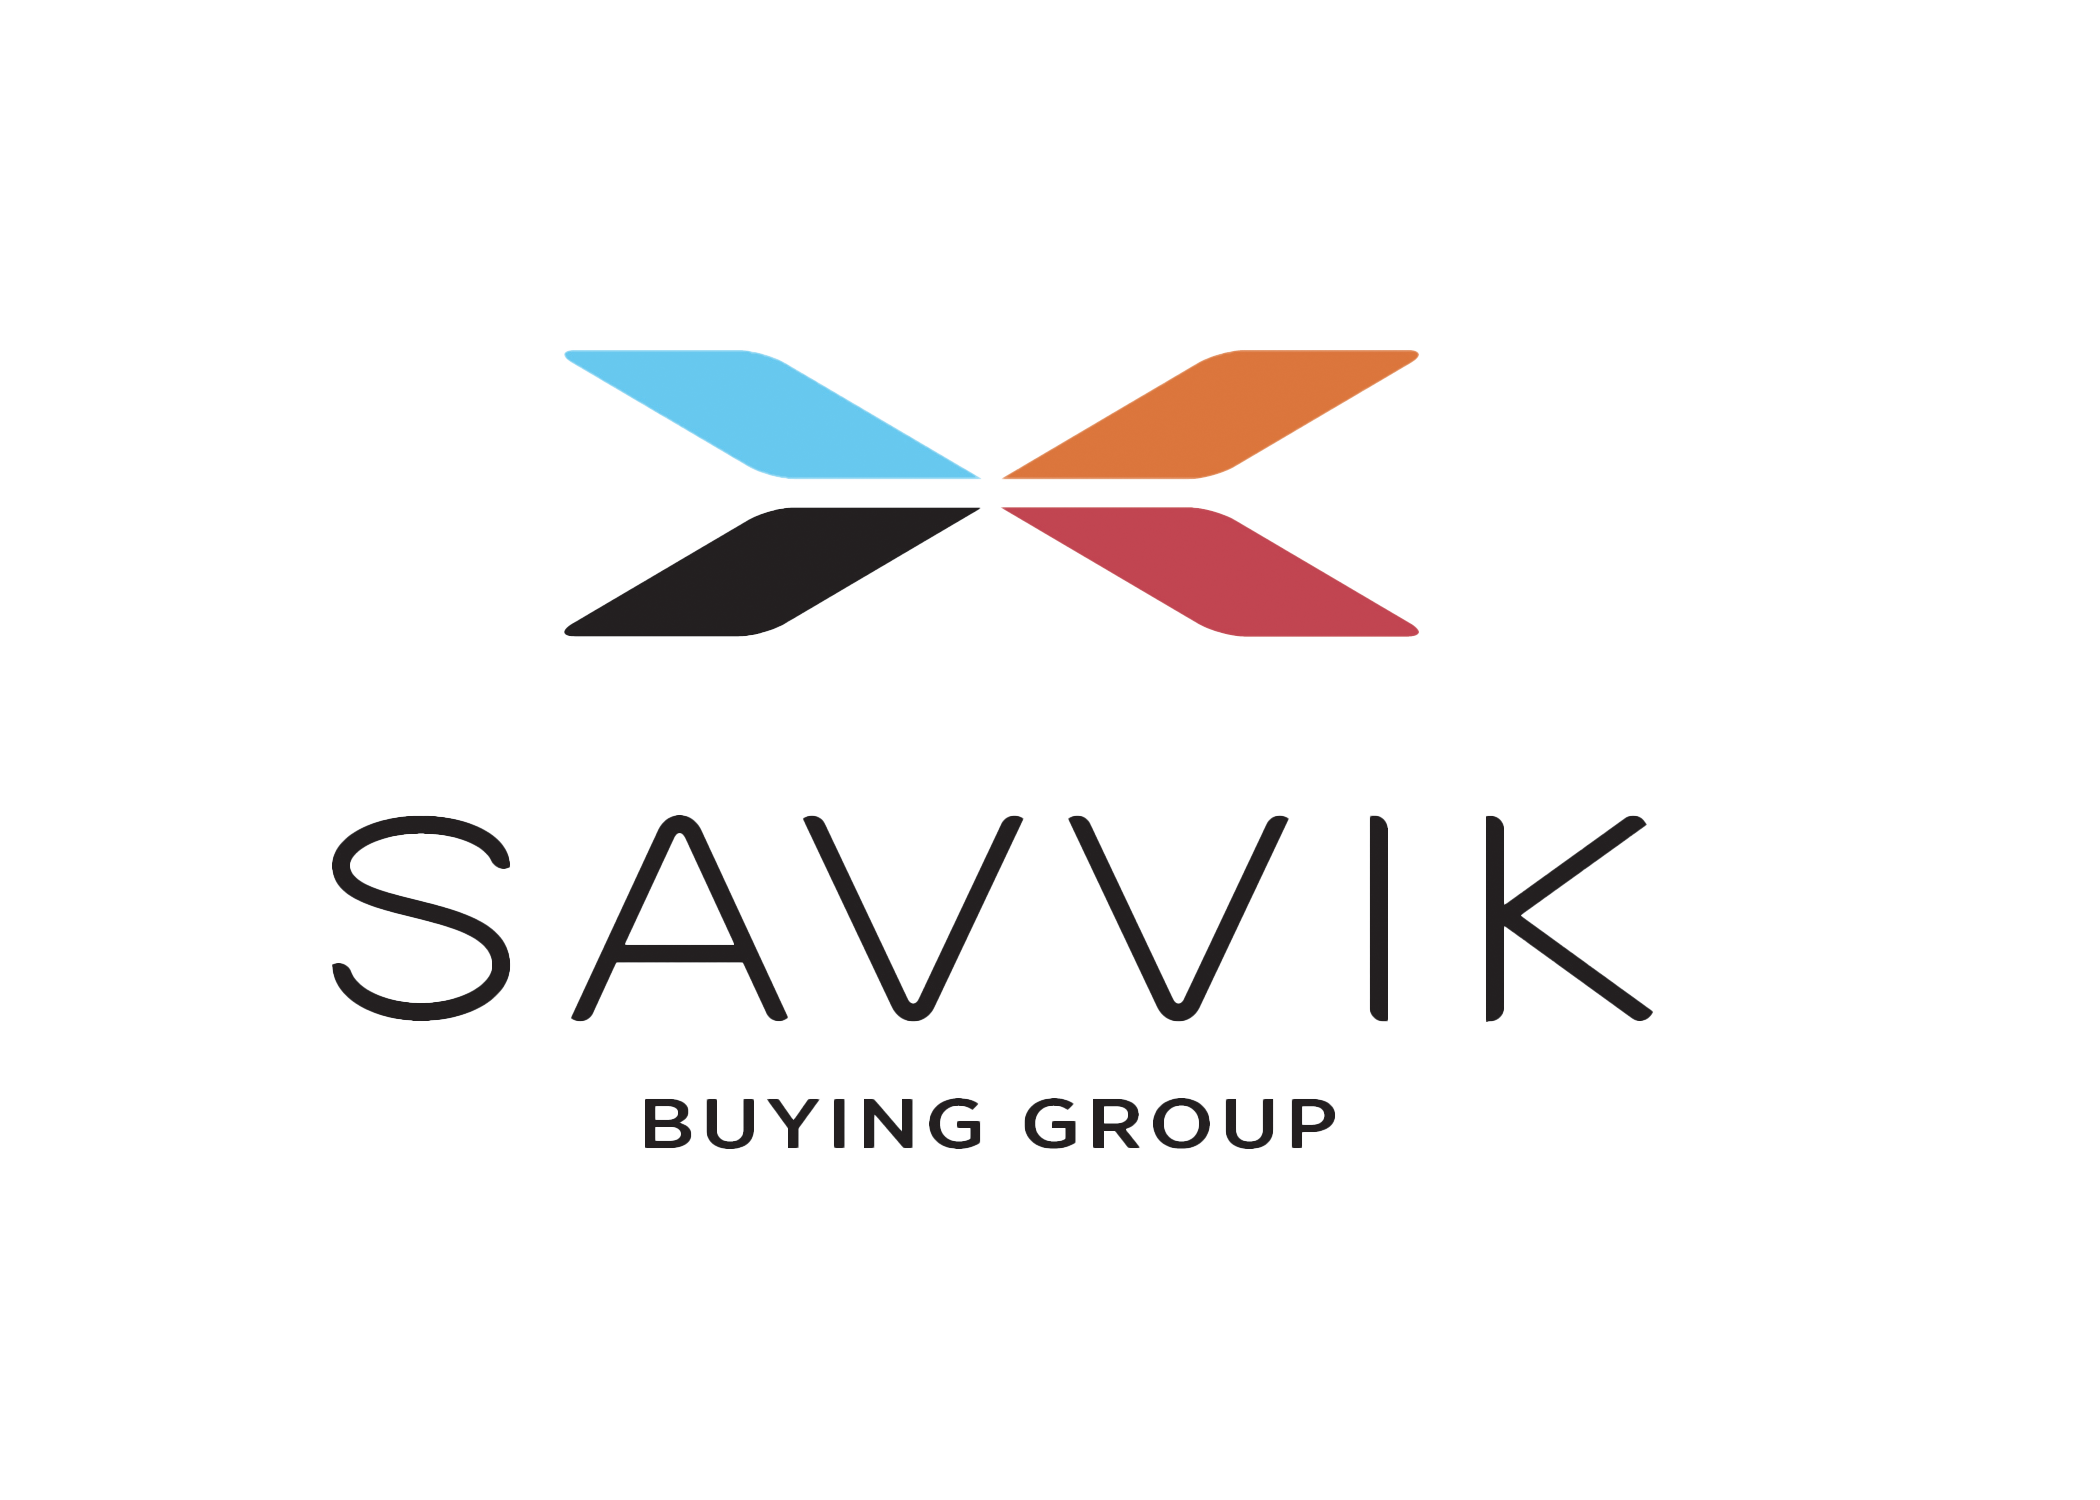 Savvik Buying Group